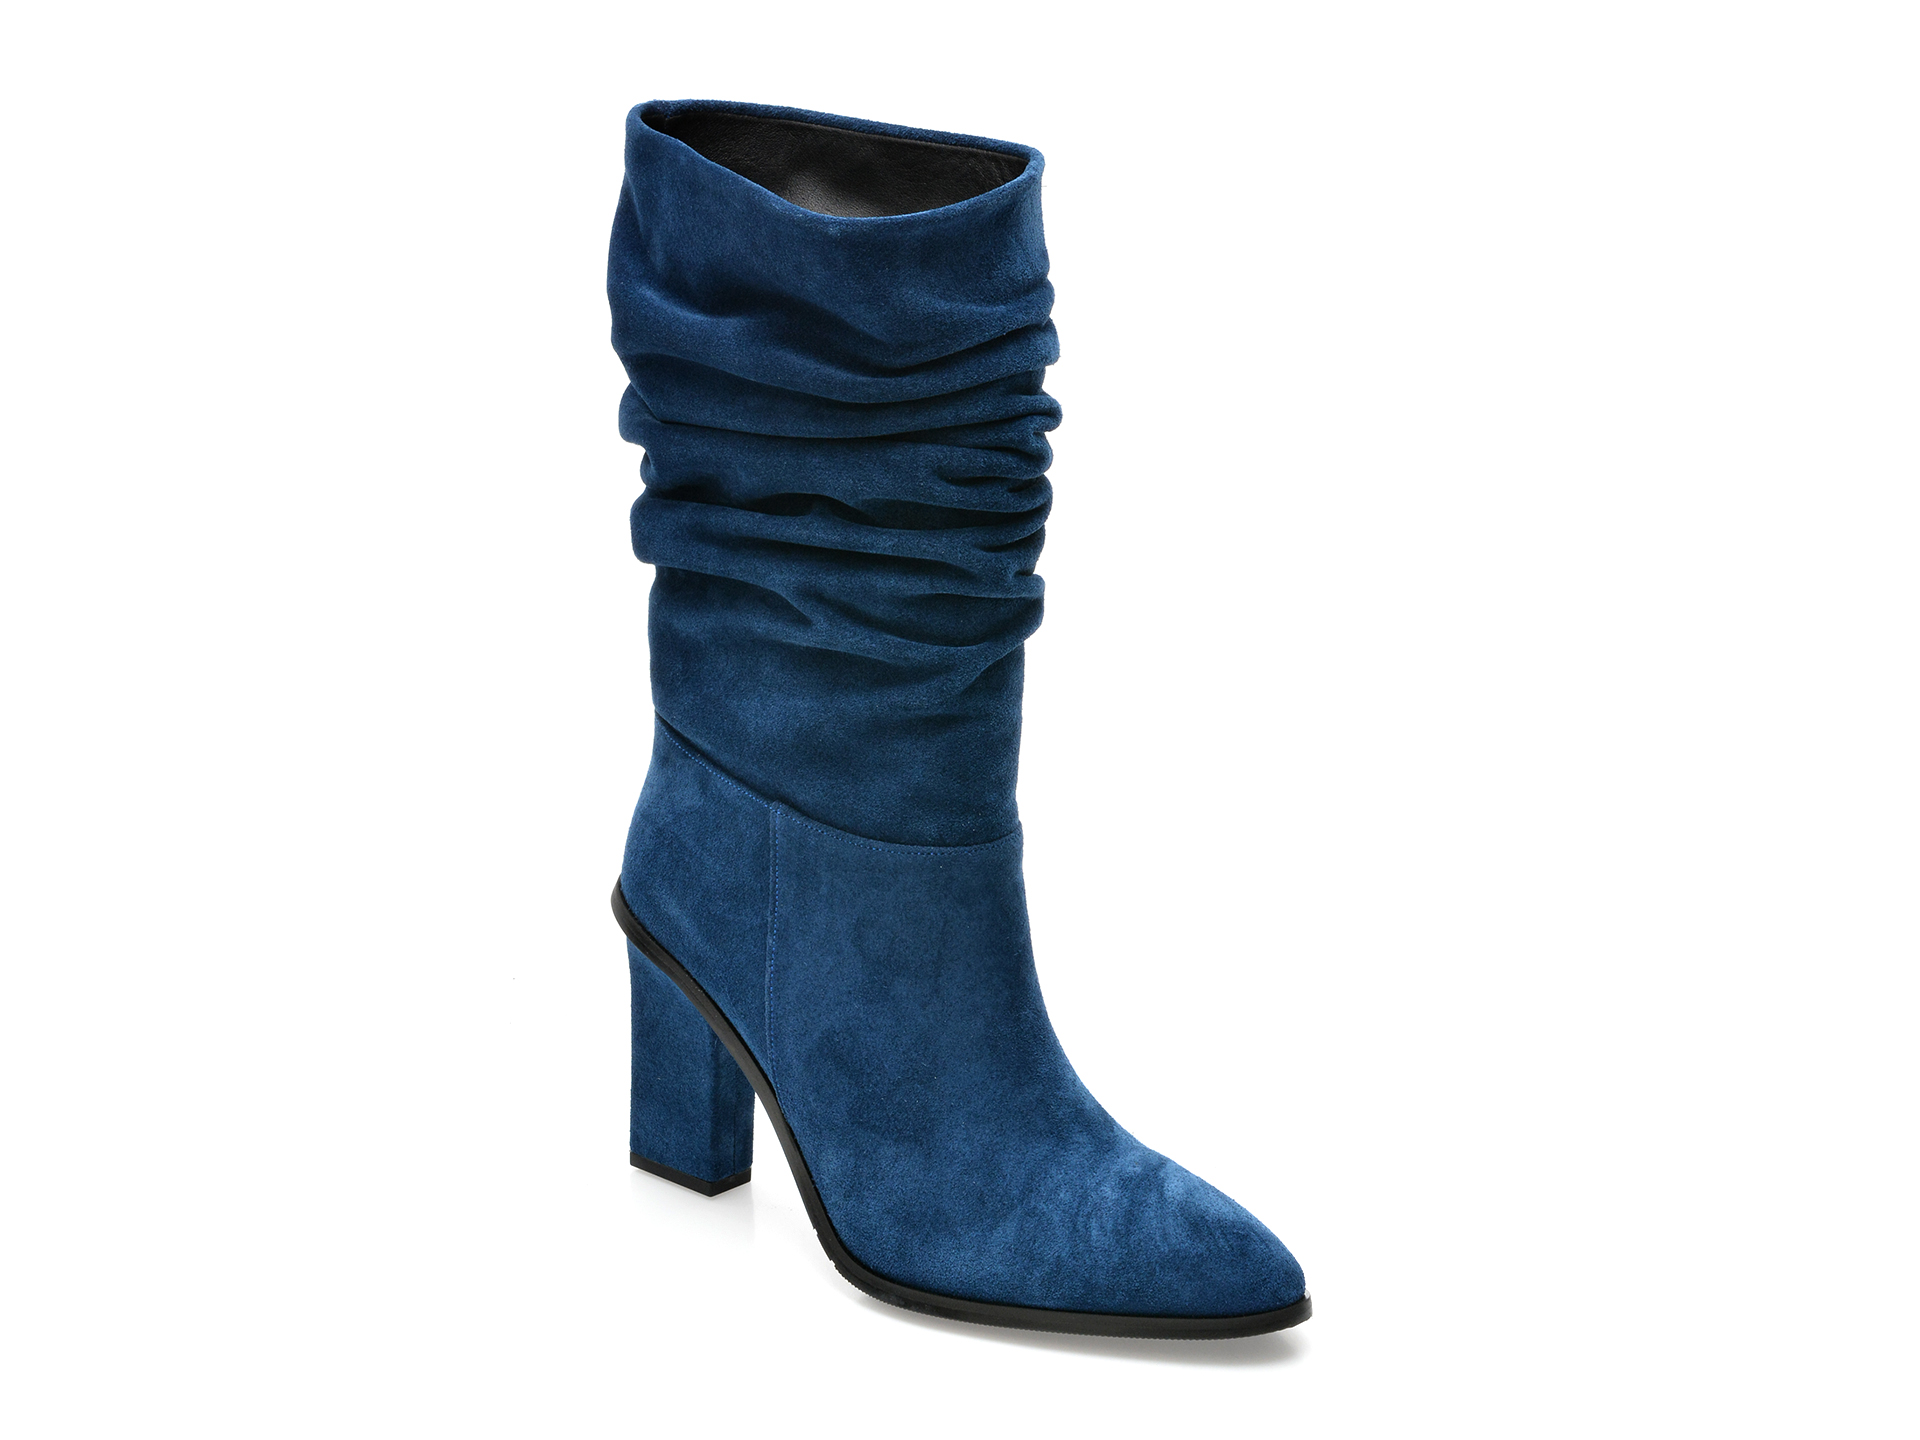 Cizme FLAVIA PASSINI albastre, 2240, din piele intoarsa /femei/cizme imagine noua